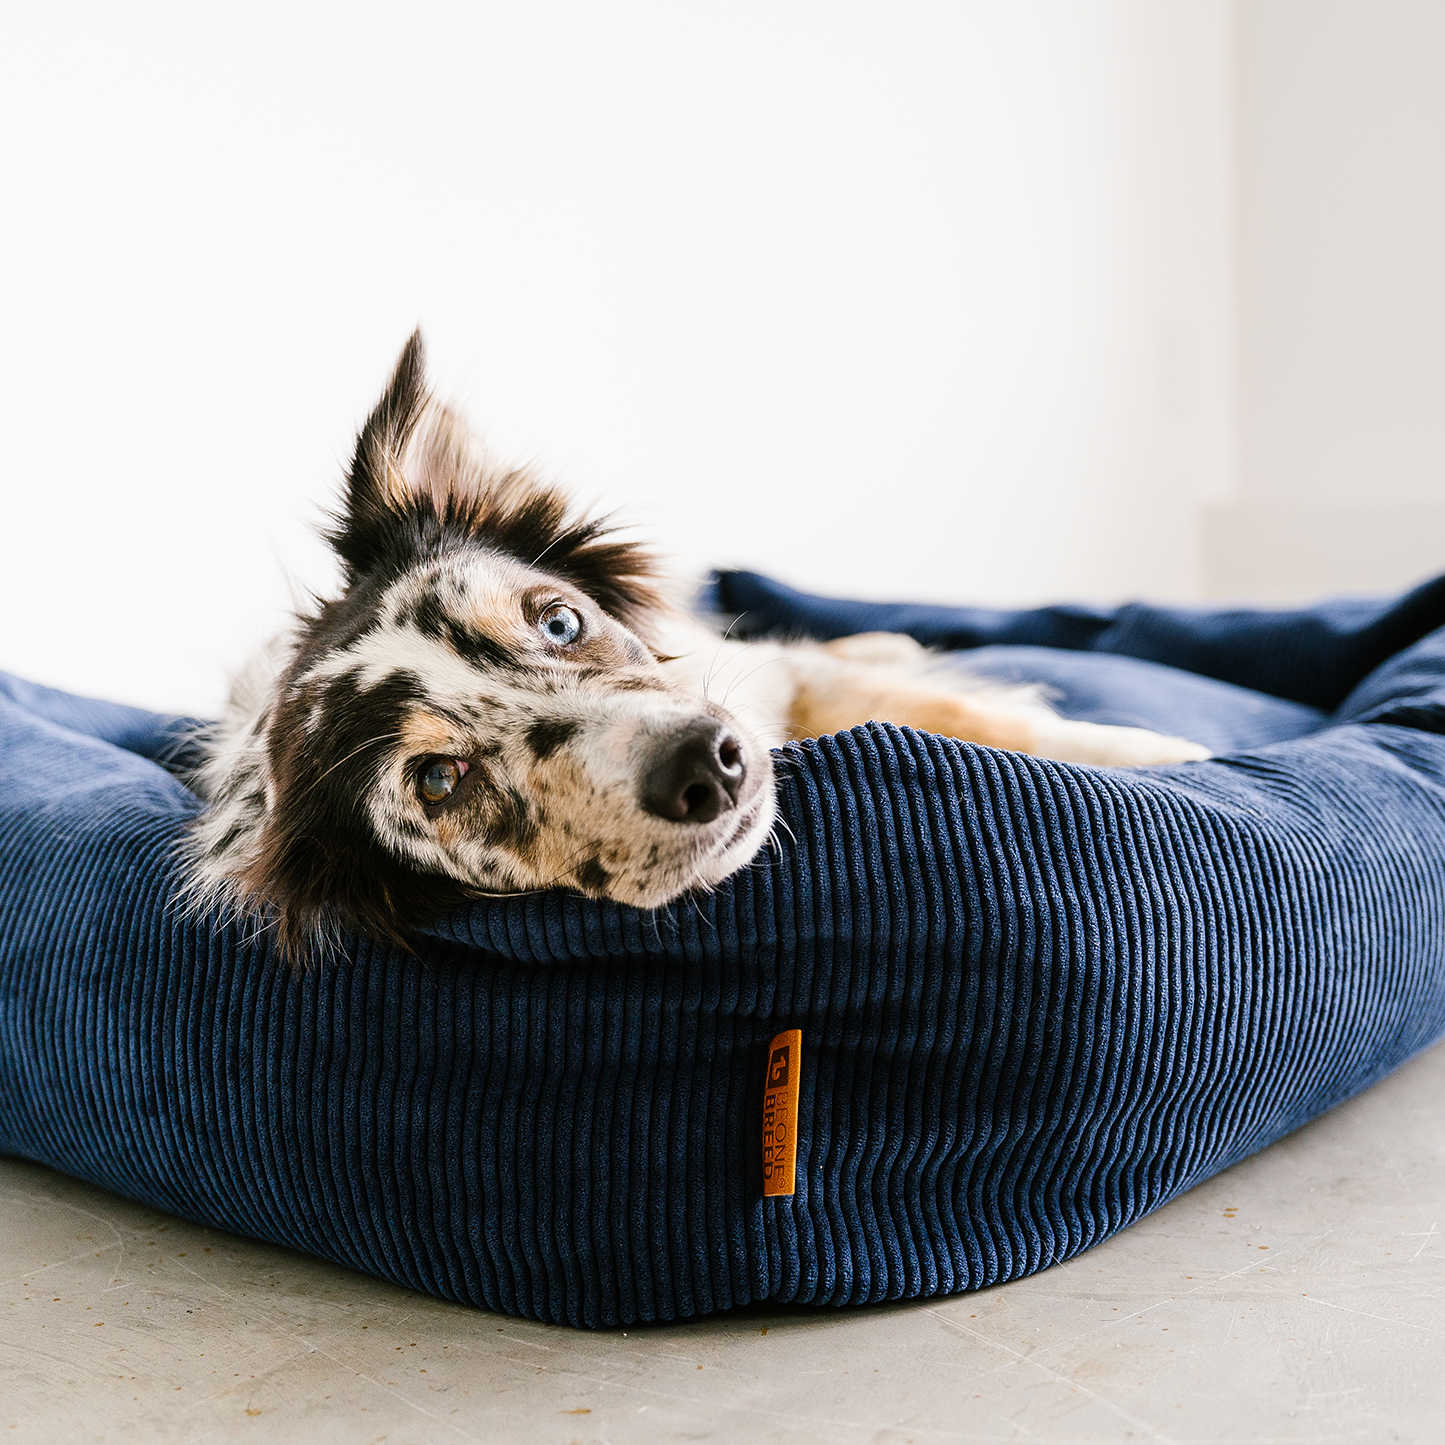 Comment bien laver un lit pour chien – BeOneBreed